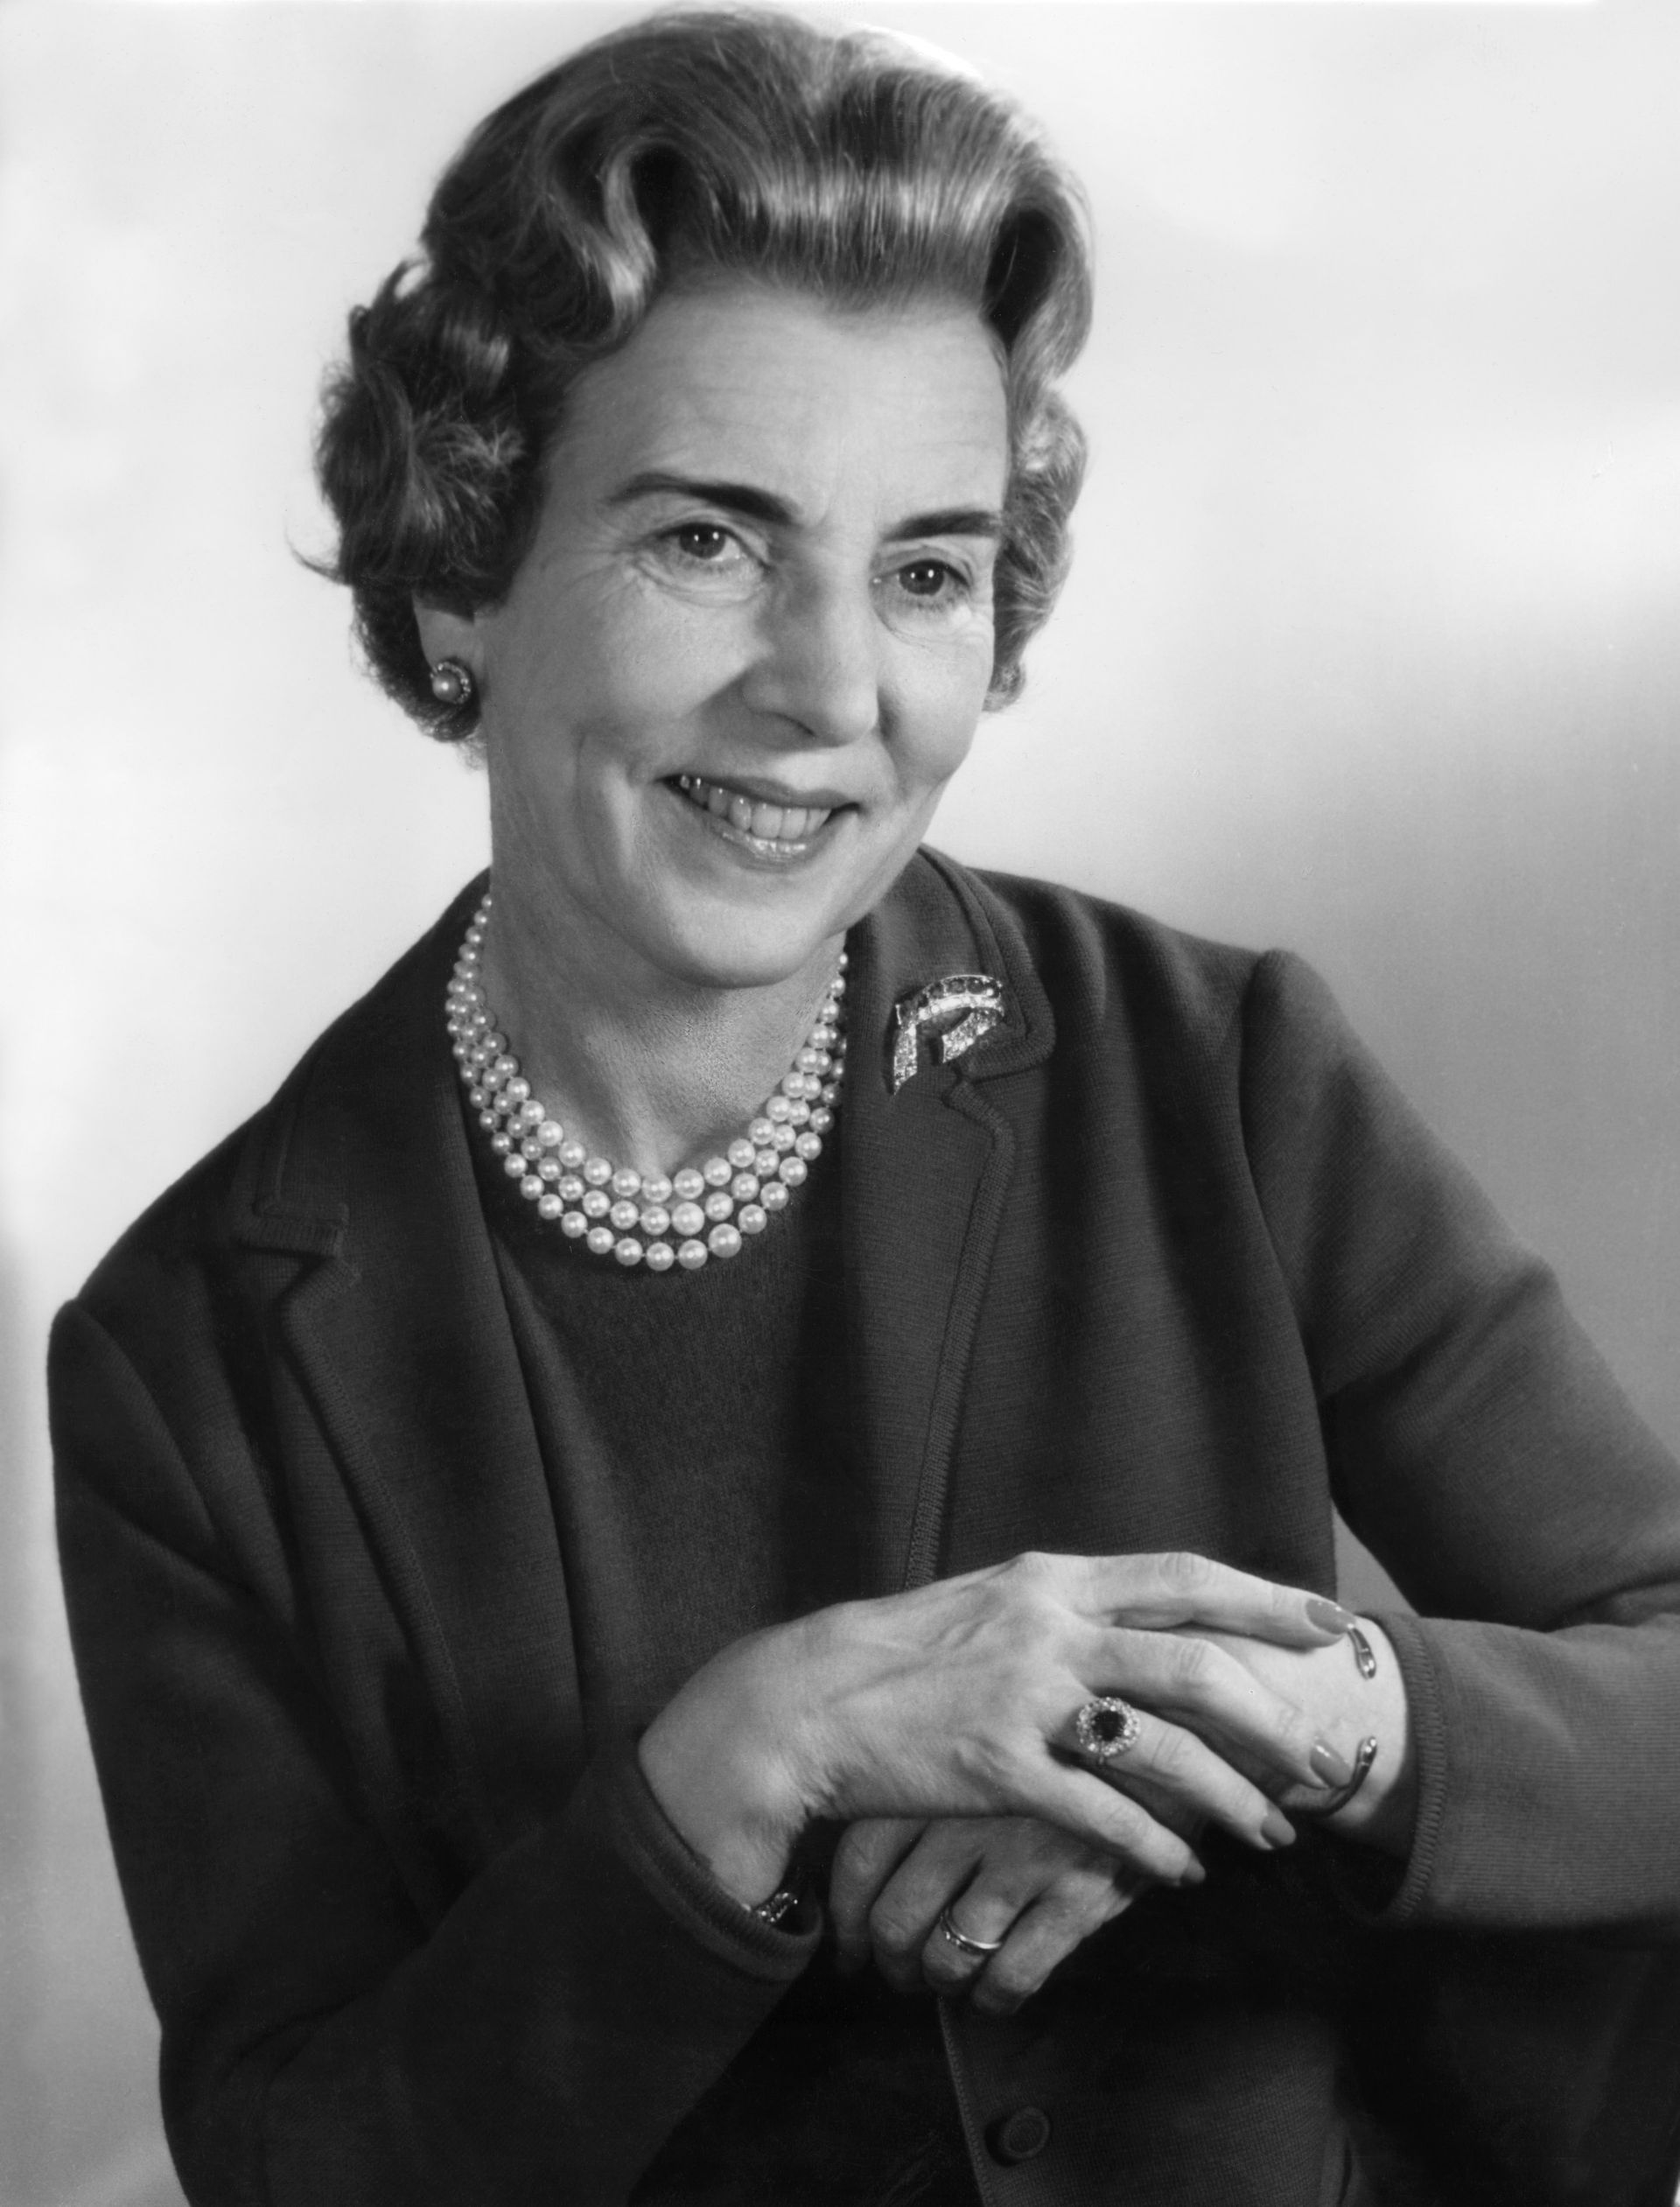 Koningin Ingrid (1910-2000), de moeder van de huidige koningin Margrethe en tante van de Zweedse